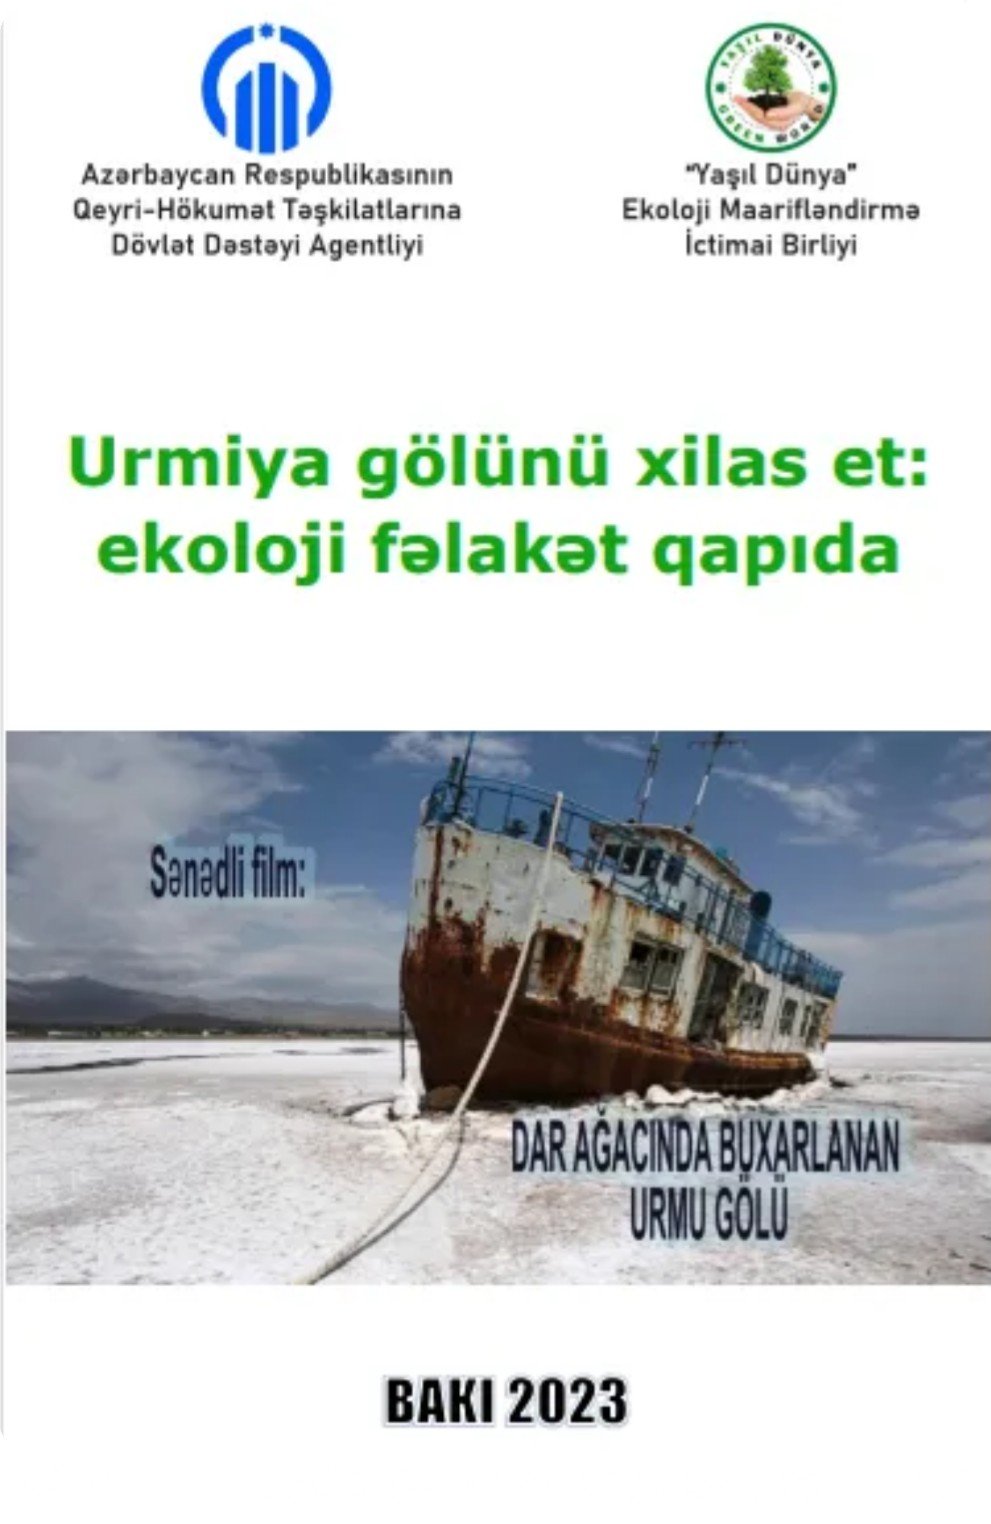 "Urmiya gölünü xilas et: ekoloji fəlakət qapıda" adlı layihə uğurla yekunlaşdı